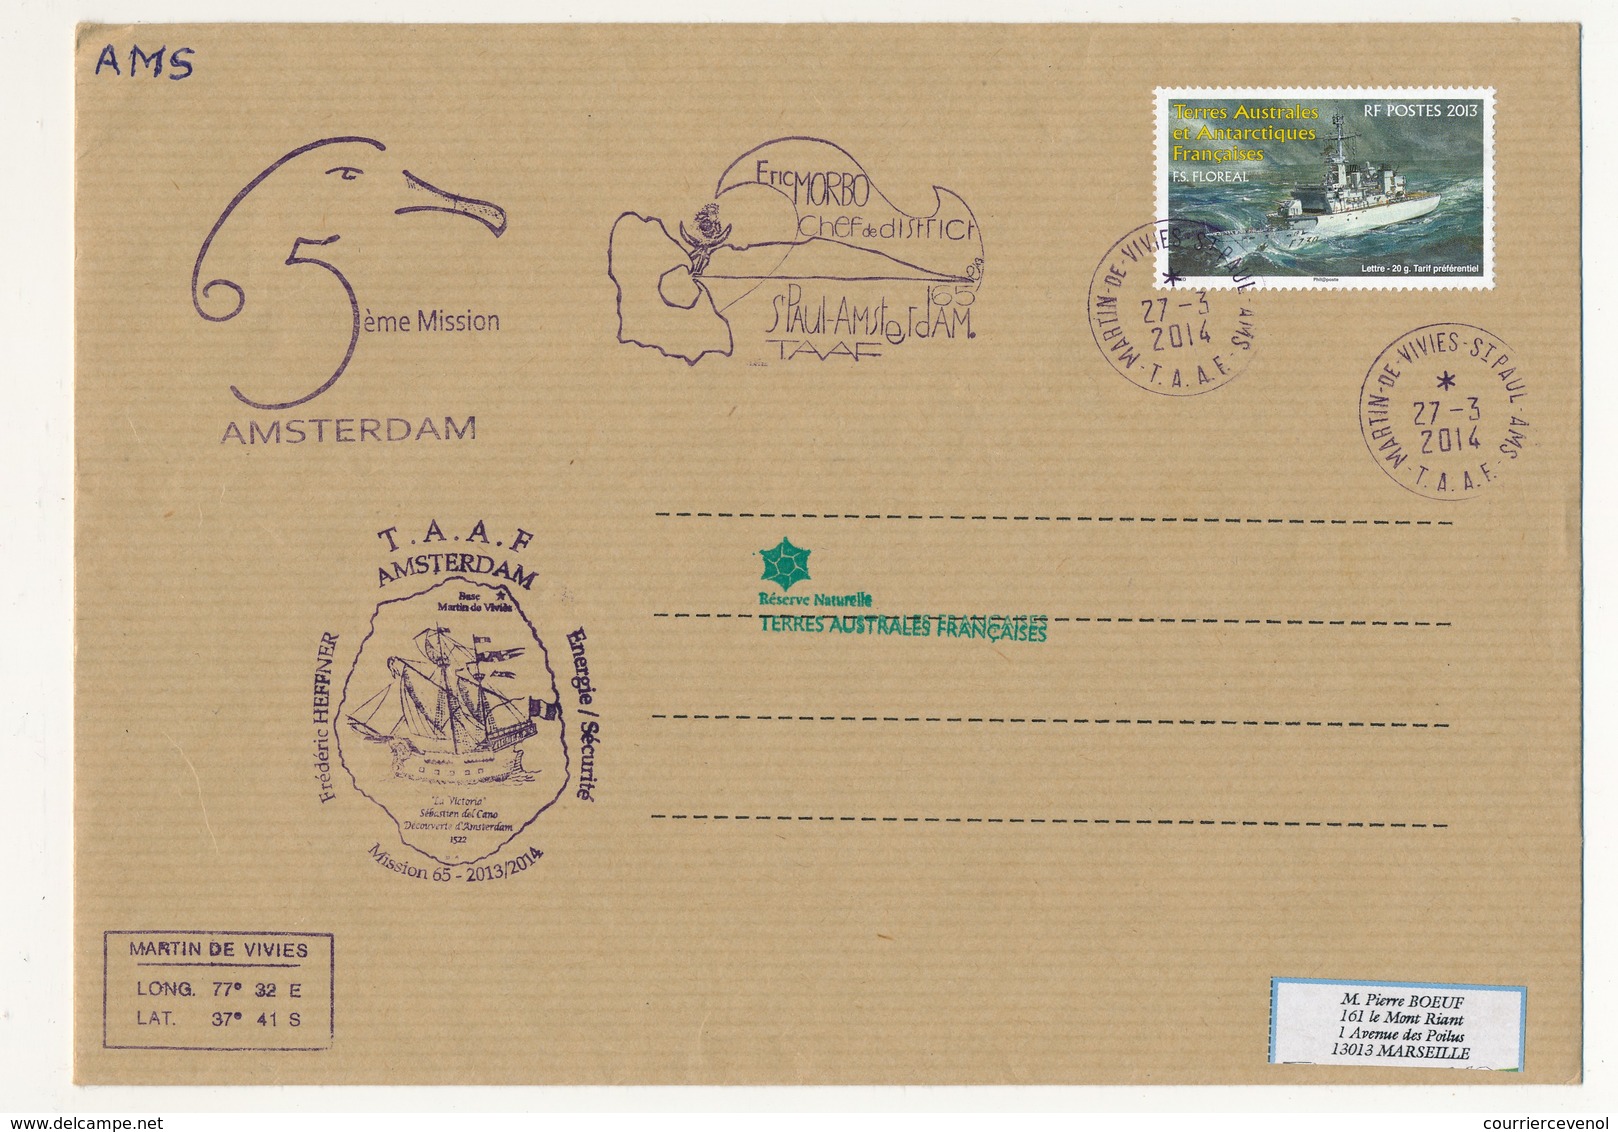 T.A.A.F - Enveloppe Martin De Vivies - St Paul Ams - 27/3/2014 - FS Floreal / 5eme Mission Amsterdam - Covers & Documents